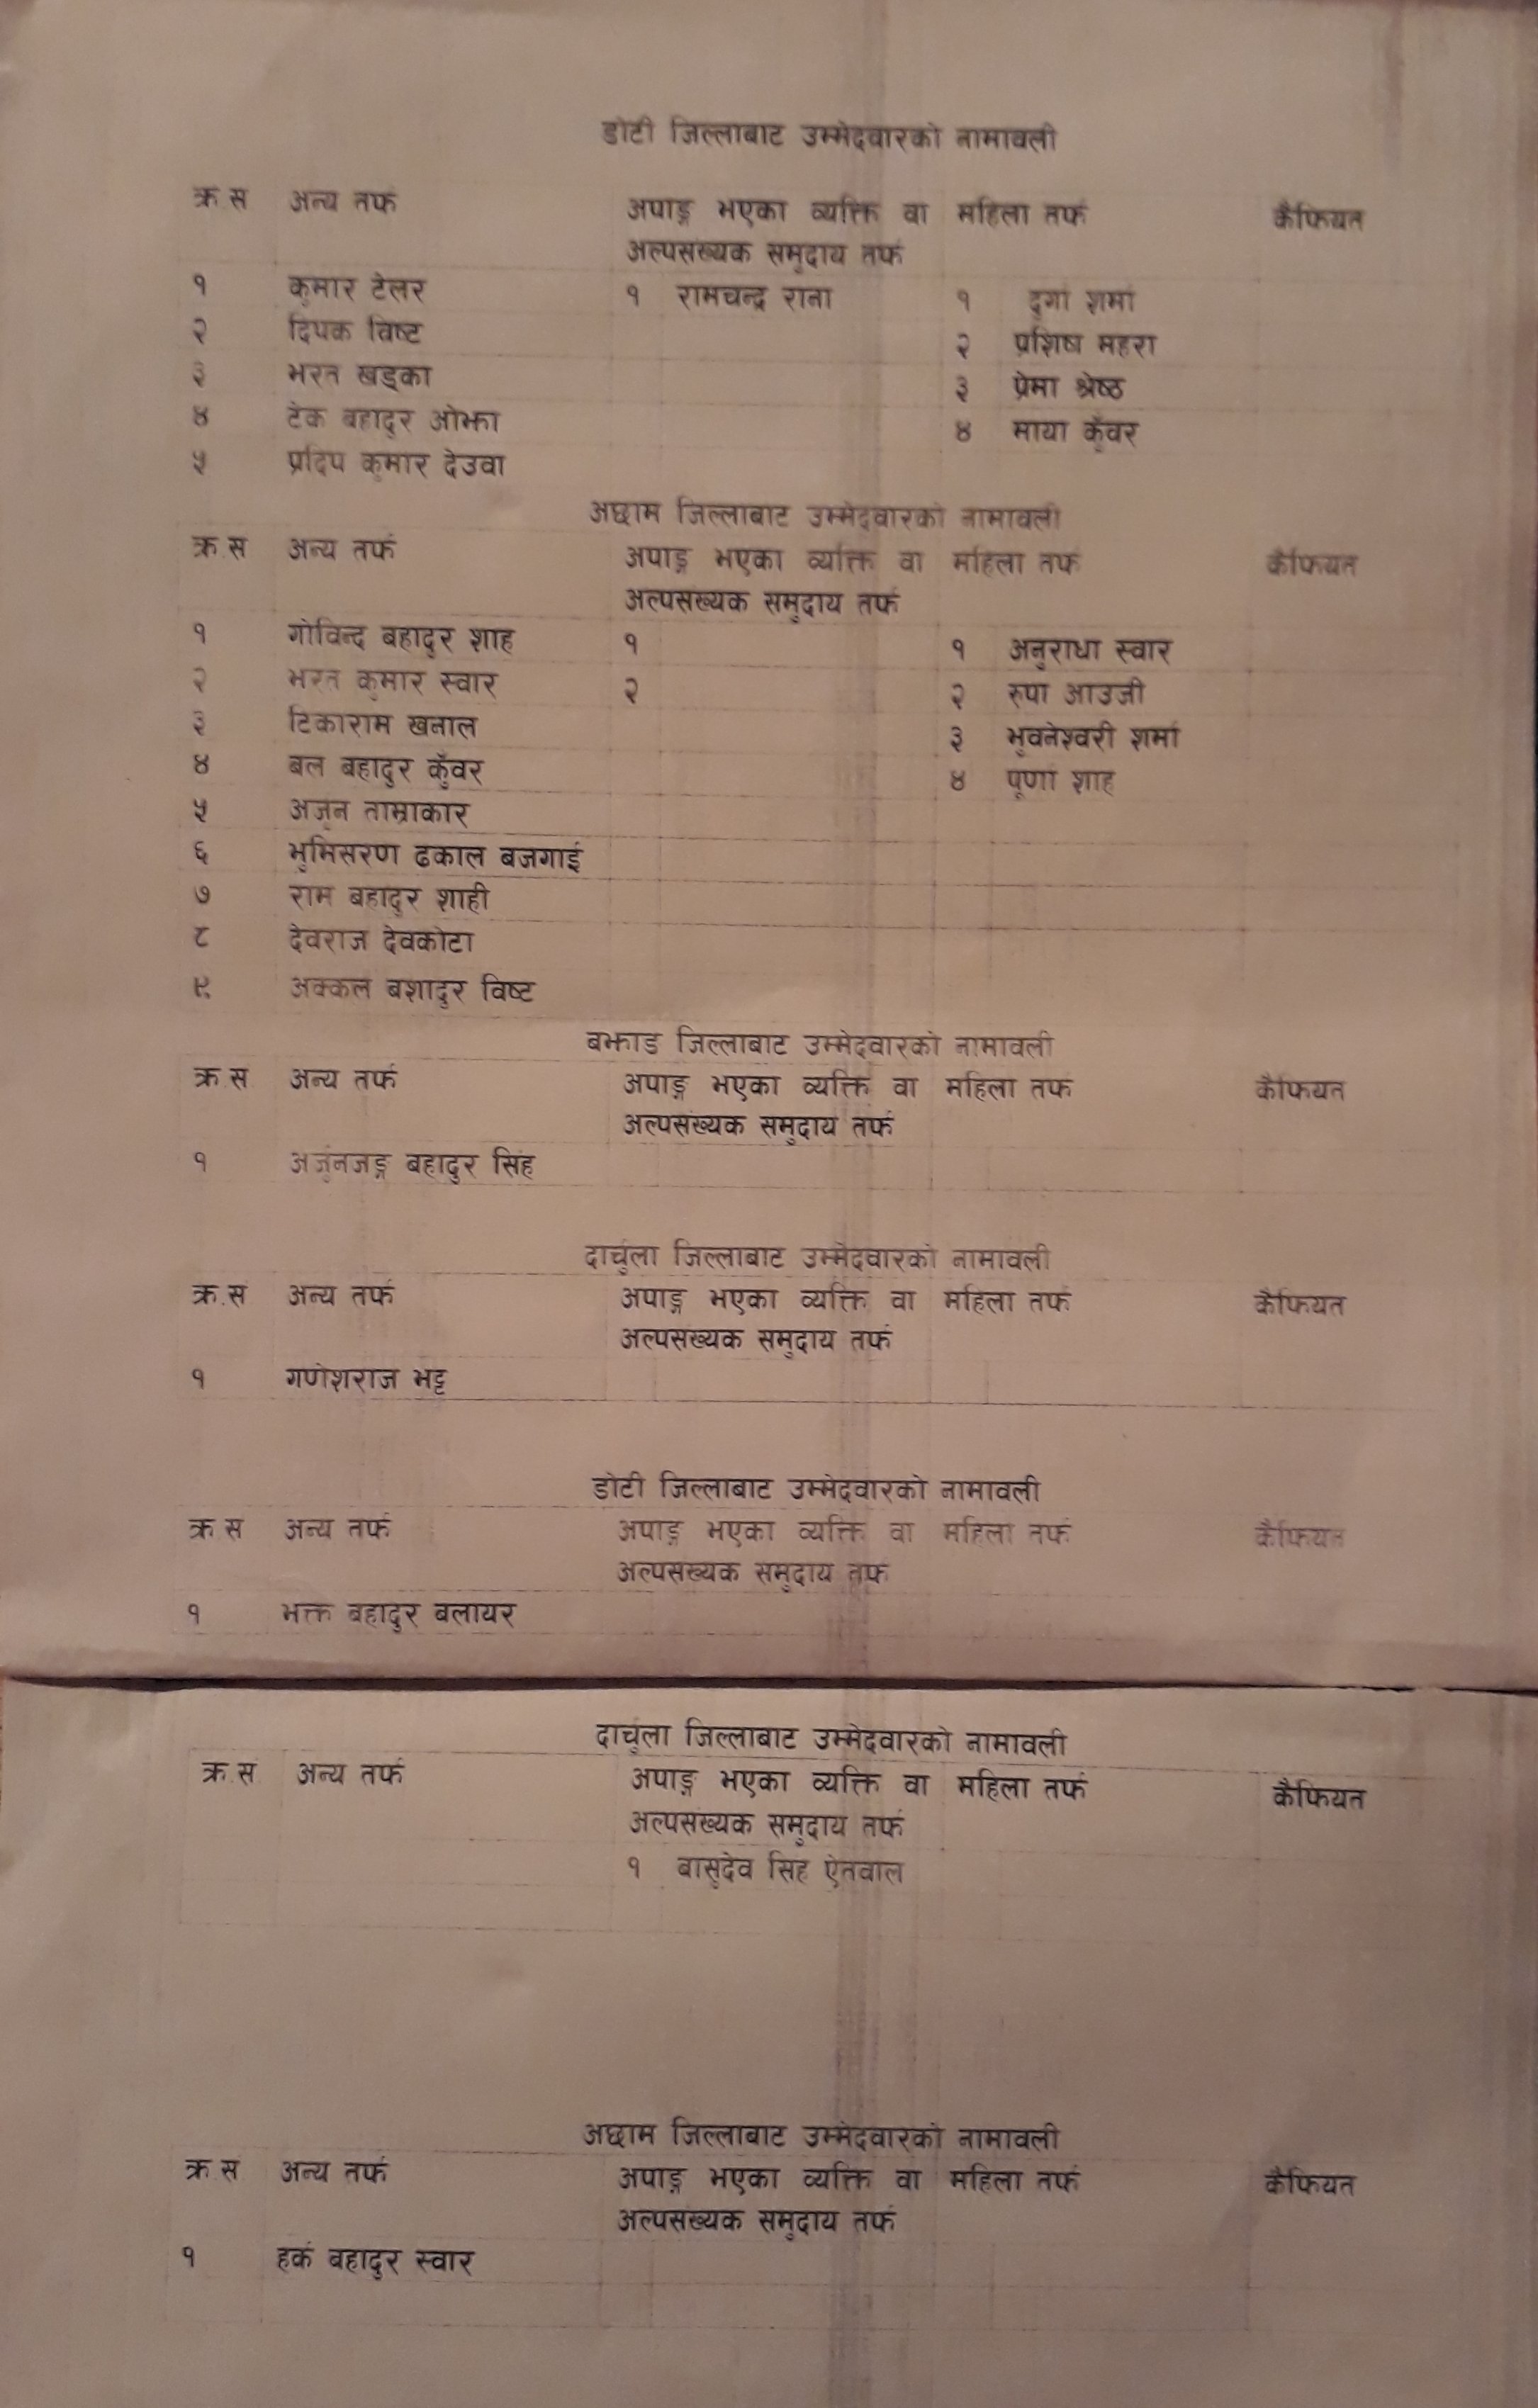 Congress list (2)